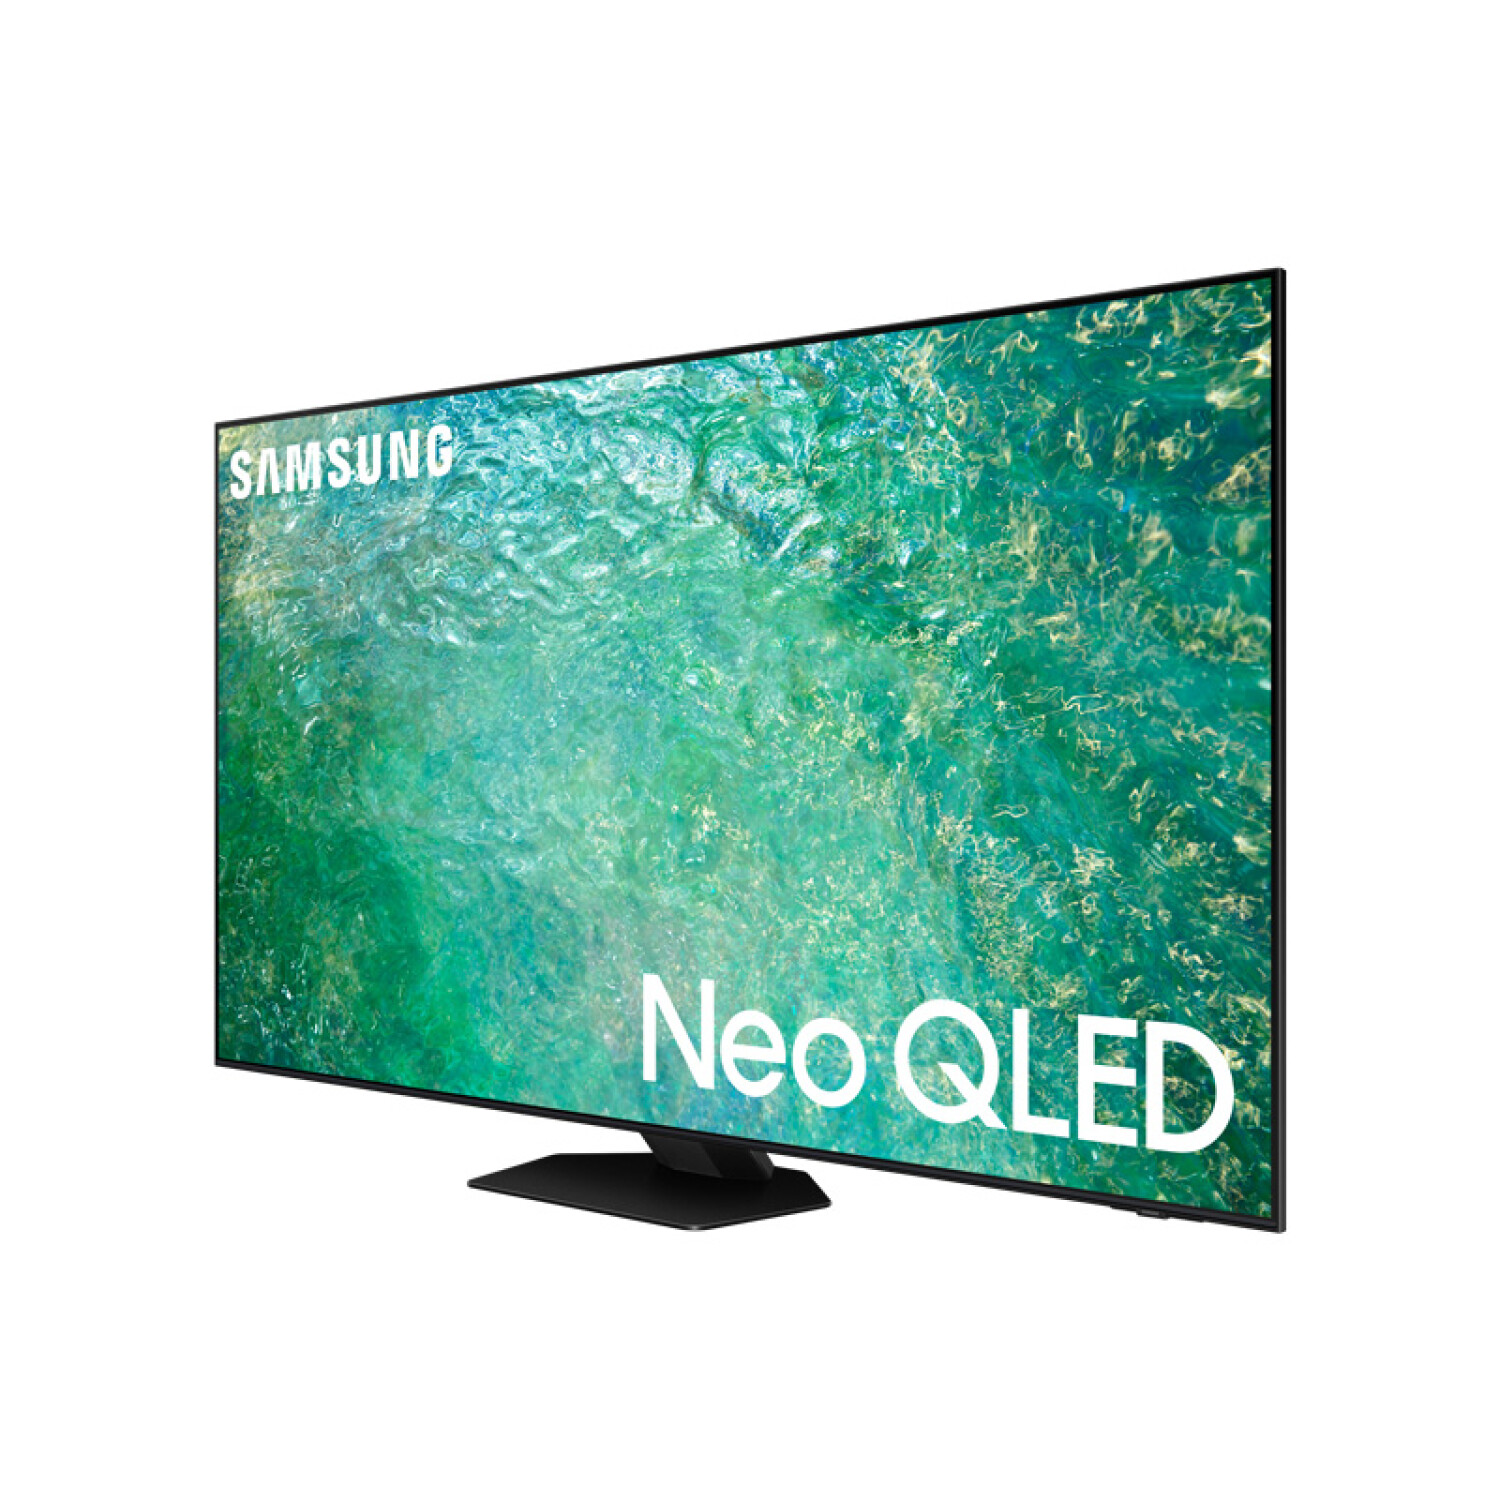 Smart TV QLED — Nstore